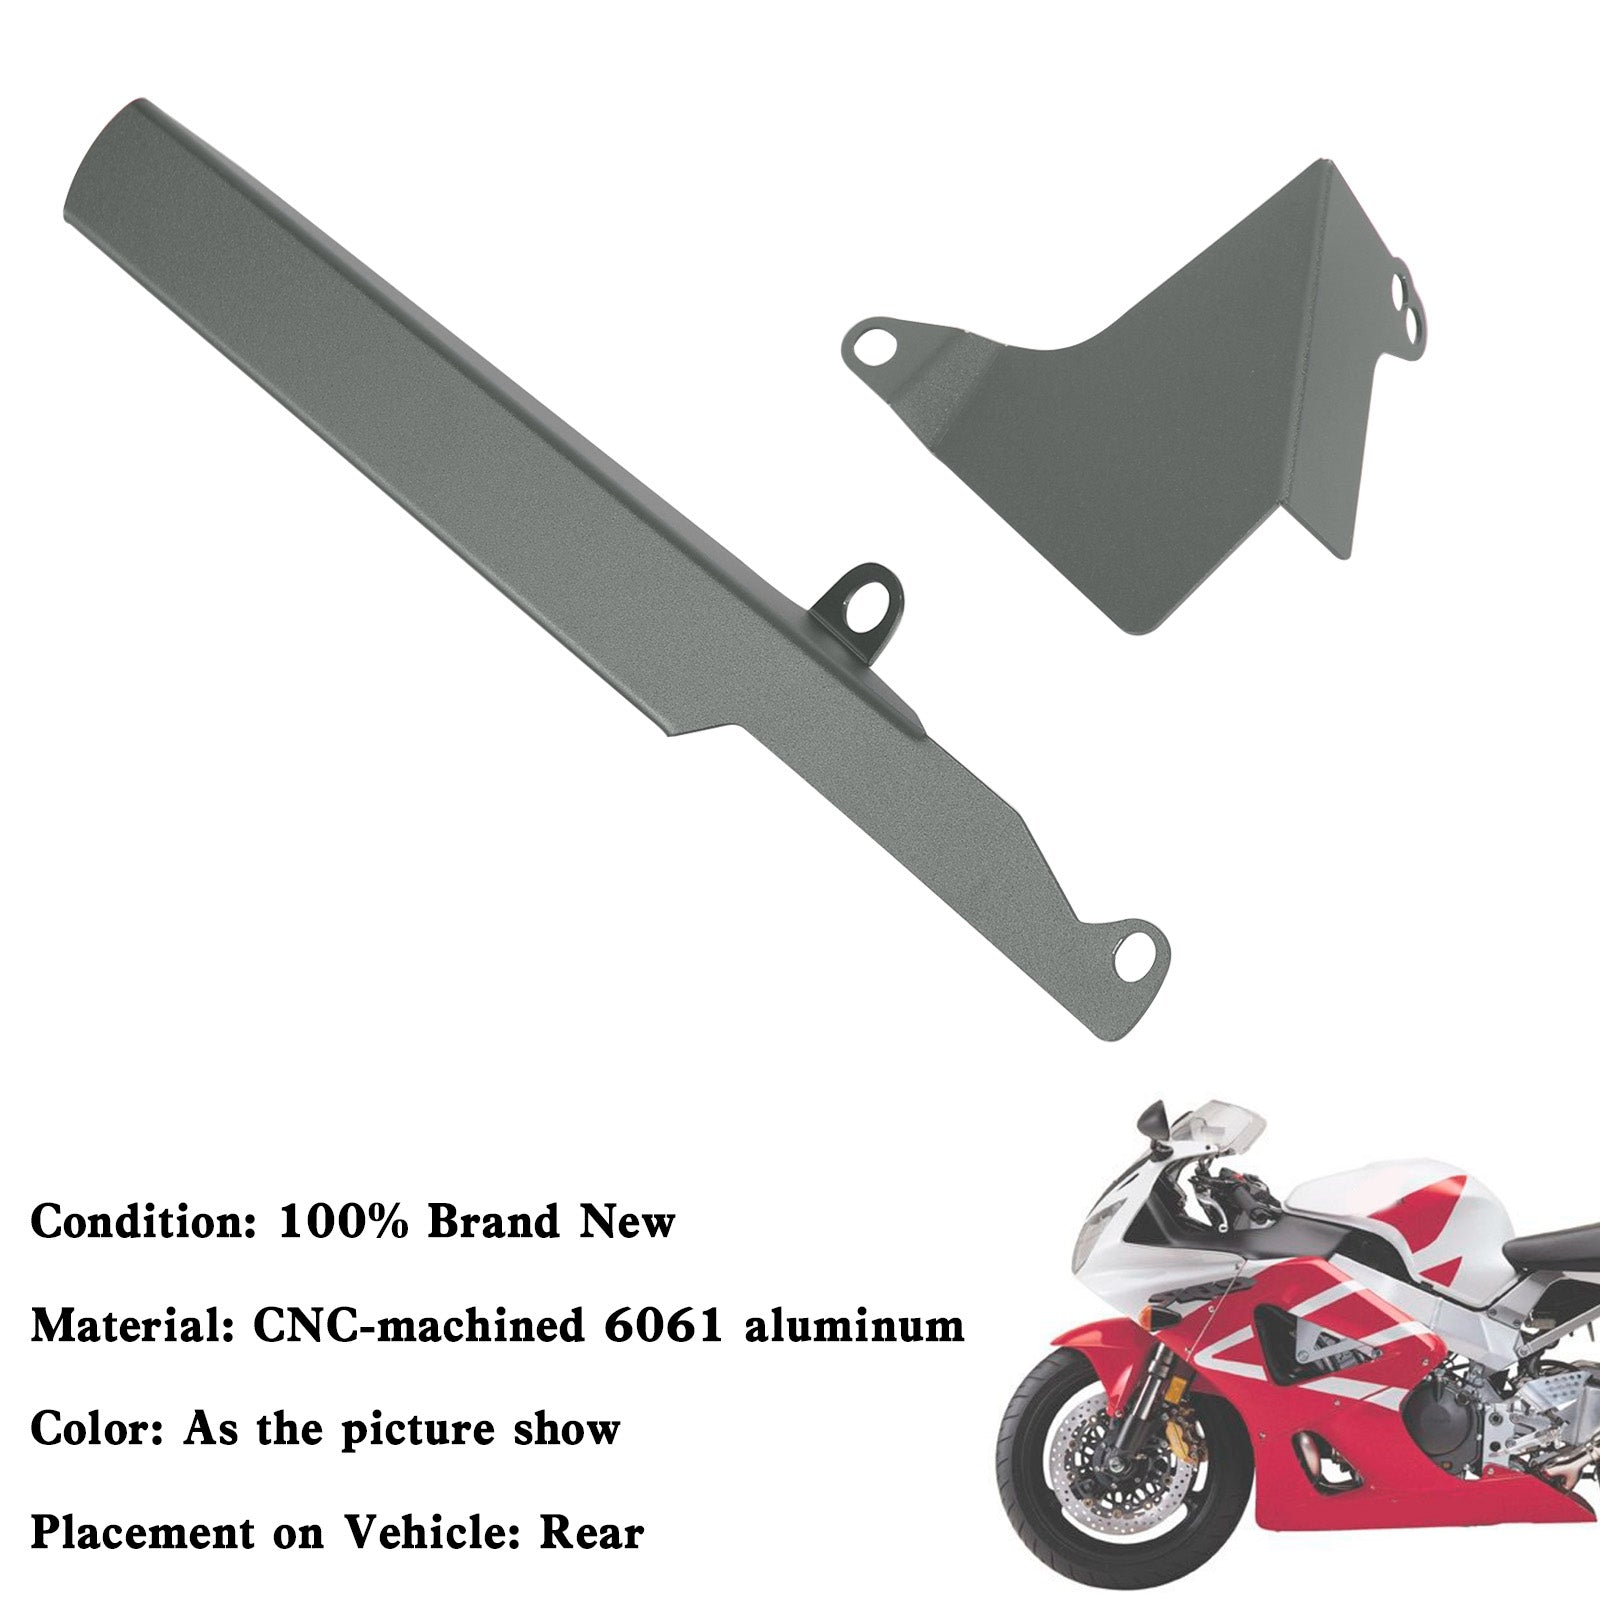 Copertura protettiva per protezione catena pignone posteriore per Honda CBR929RR 2000-2001